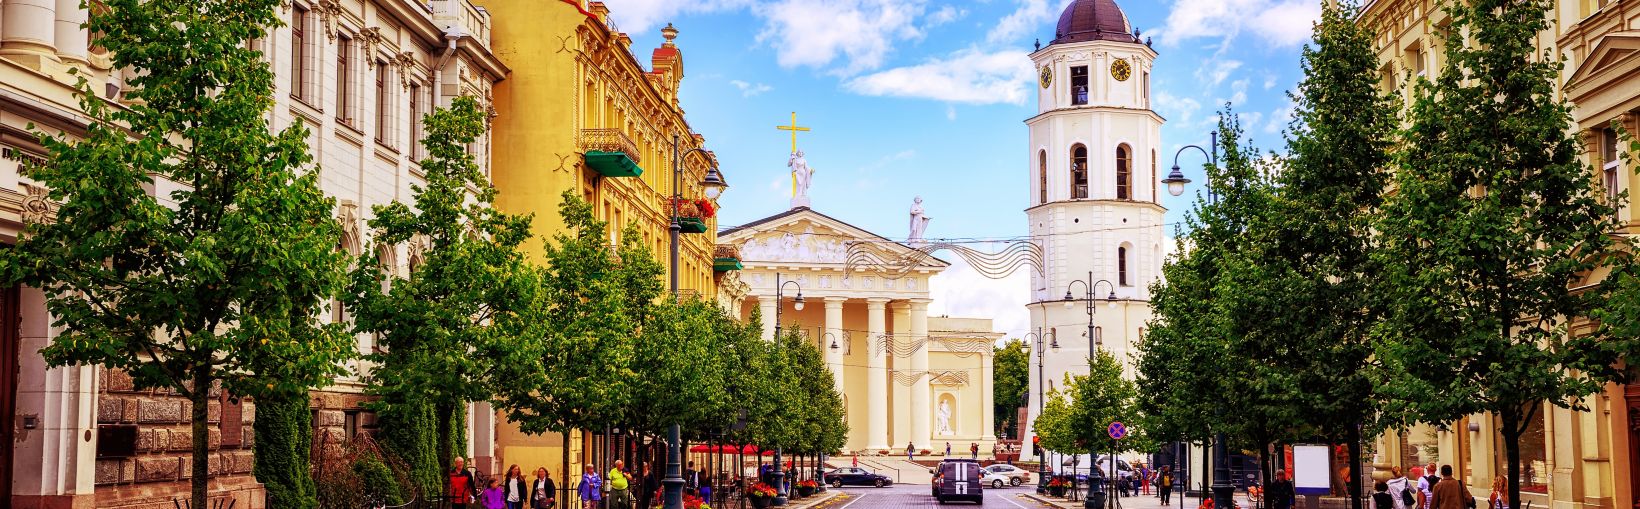 Popularne skupisko sklepów i restauracji na Placu Katedralnym, widziane z Prospektu Giedymina, głównej ulicy Wilna na Litwie